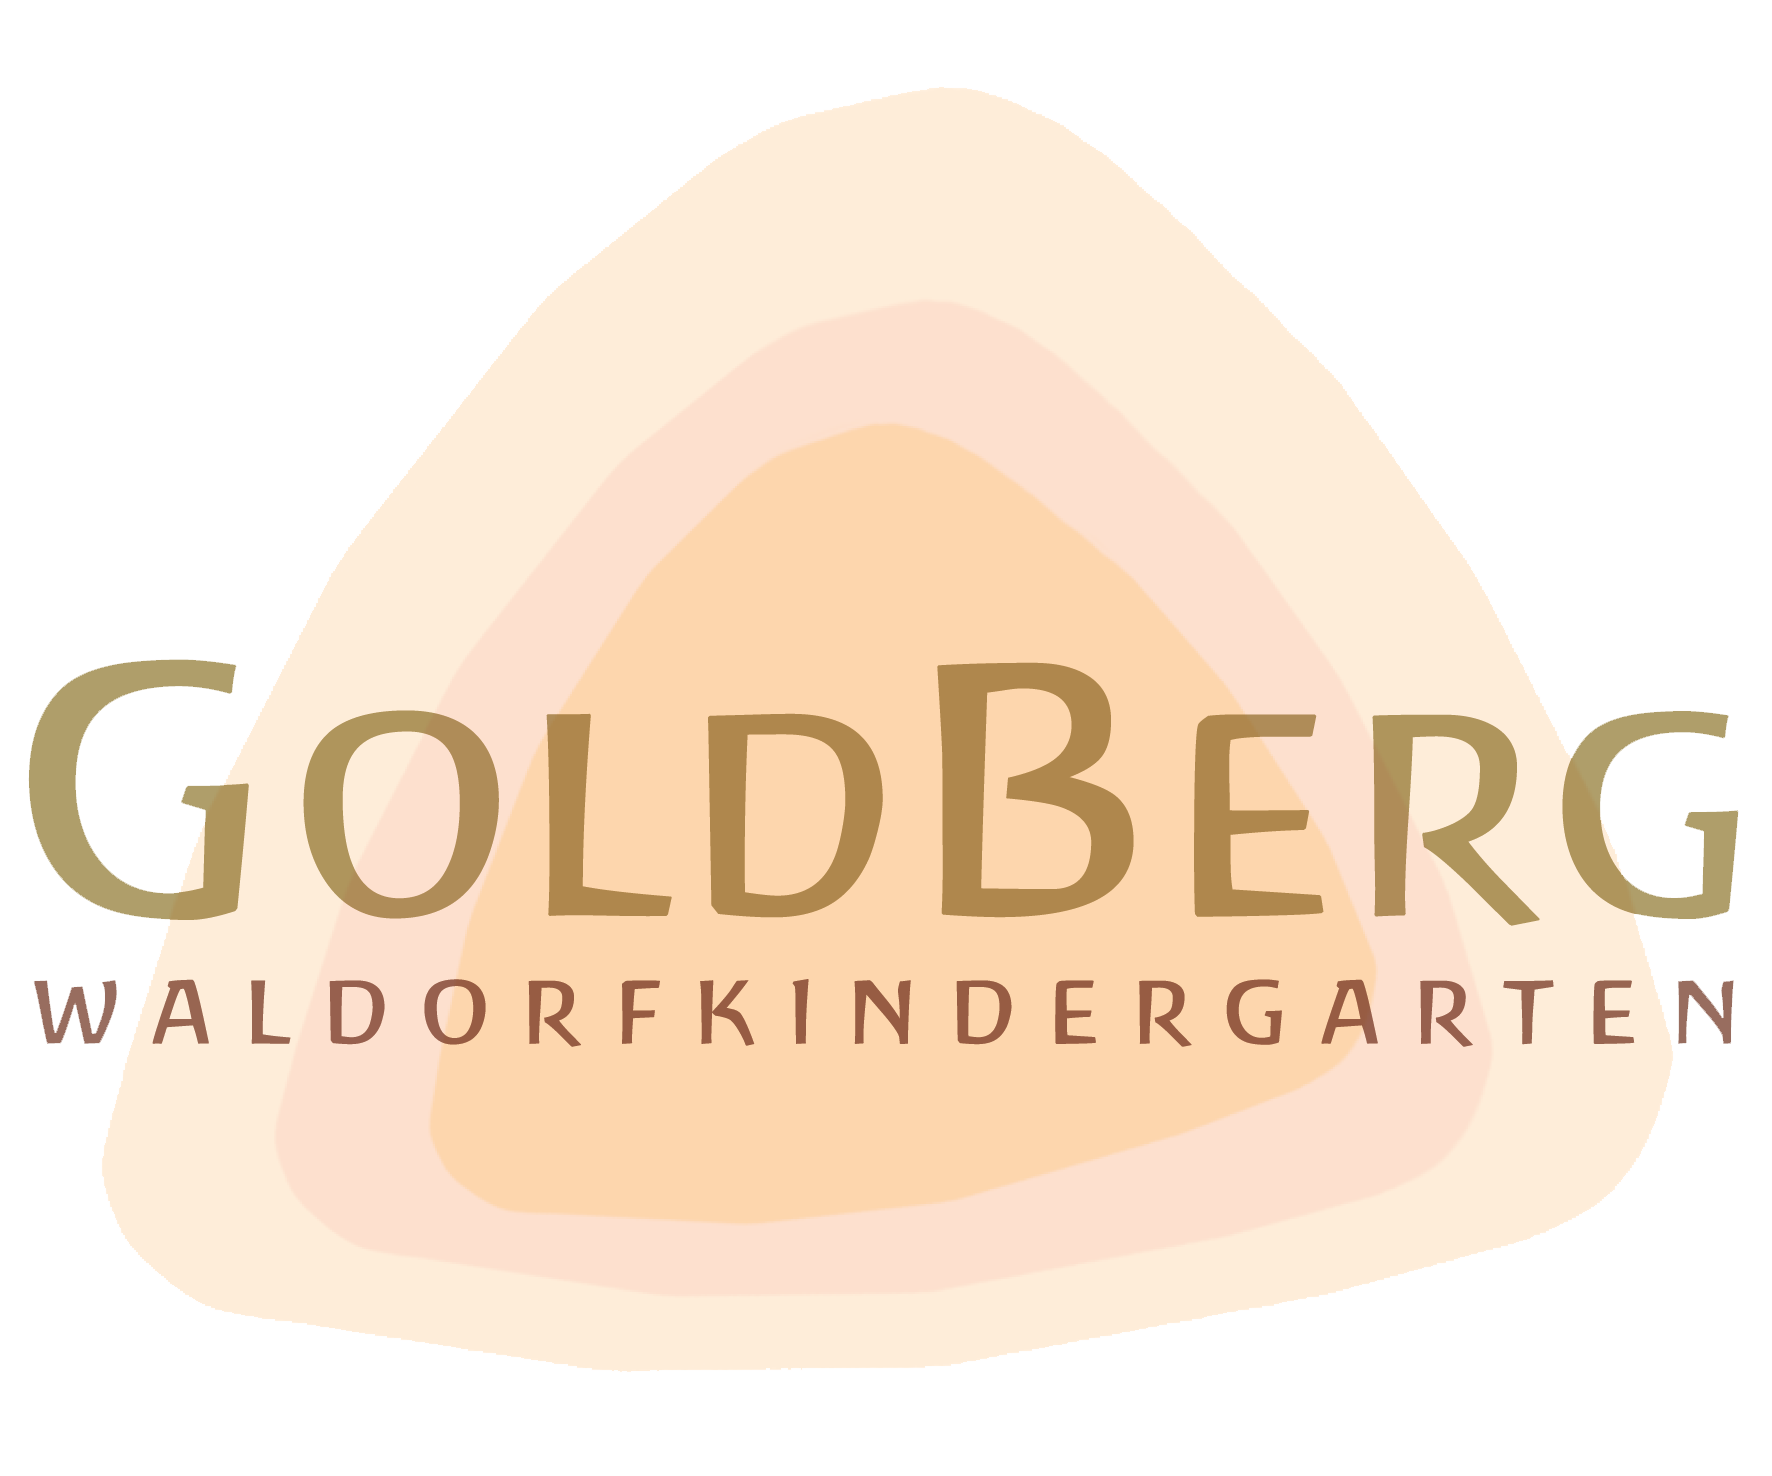 Waldorf-Kindergarten Goldberg e.v.